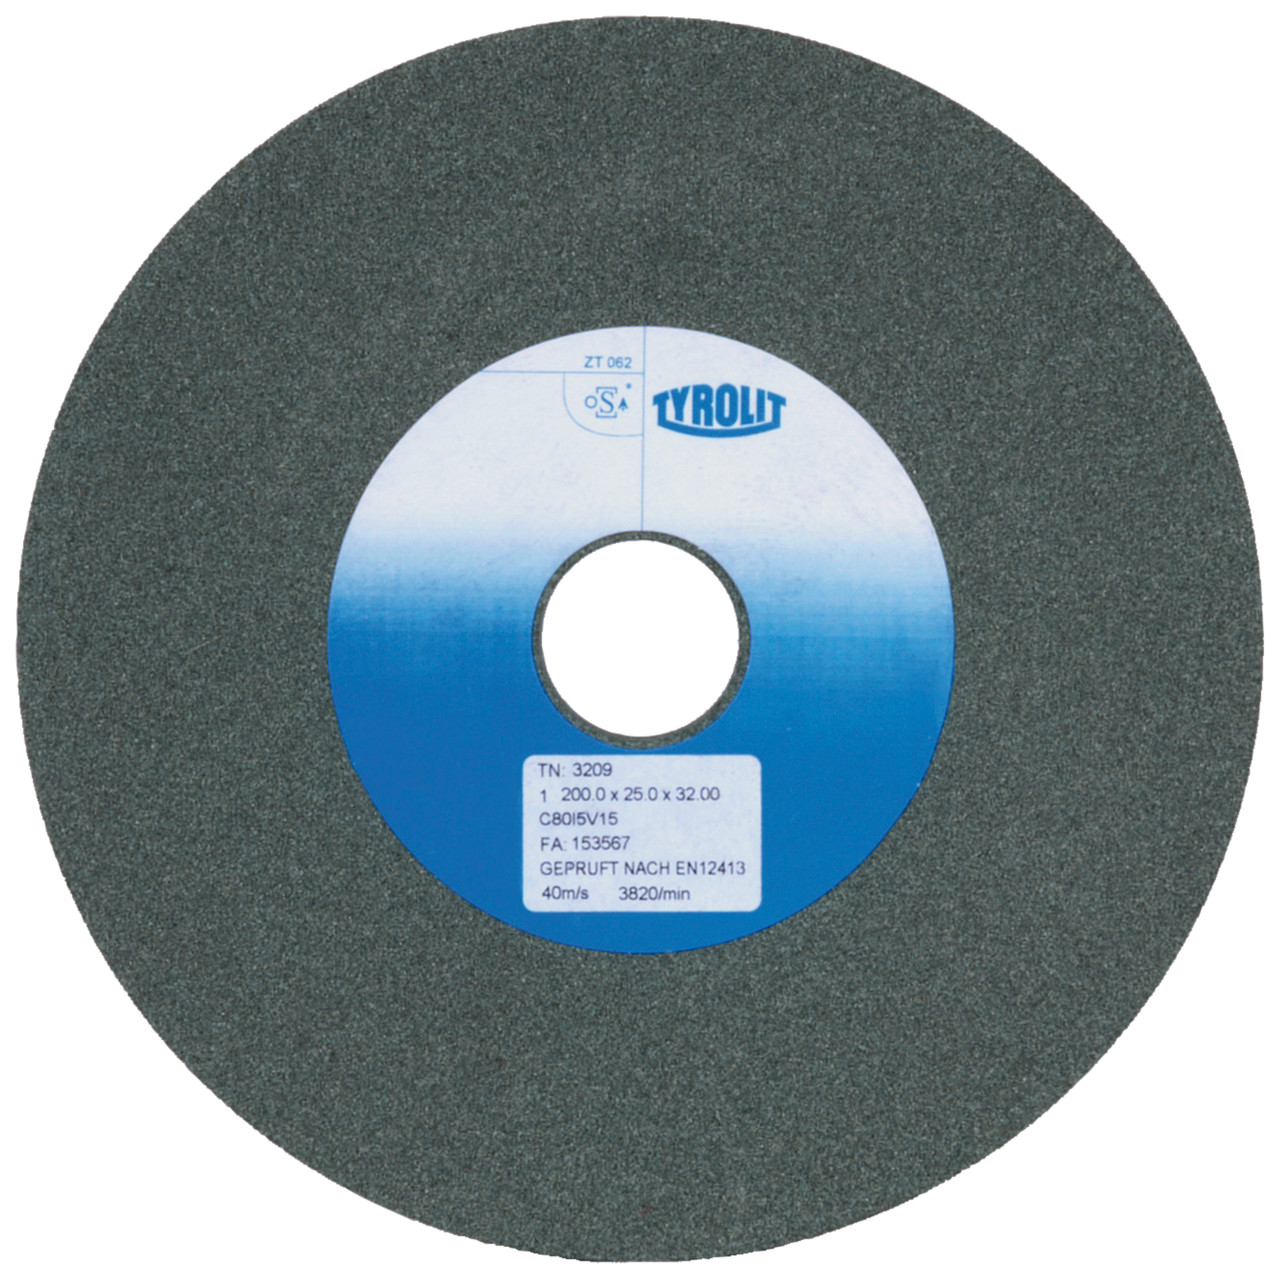 TYROLIT discos abrasivos cerámicos convencionales DxDxH 200x32x51 Para metal duro y fundición, forma: 1, Art. 879608